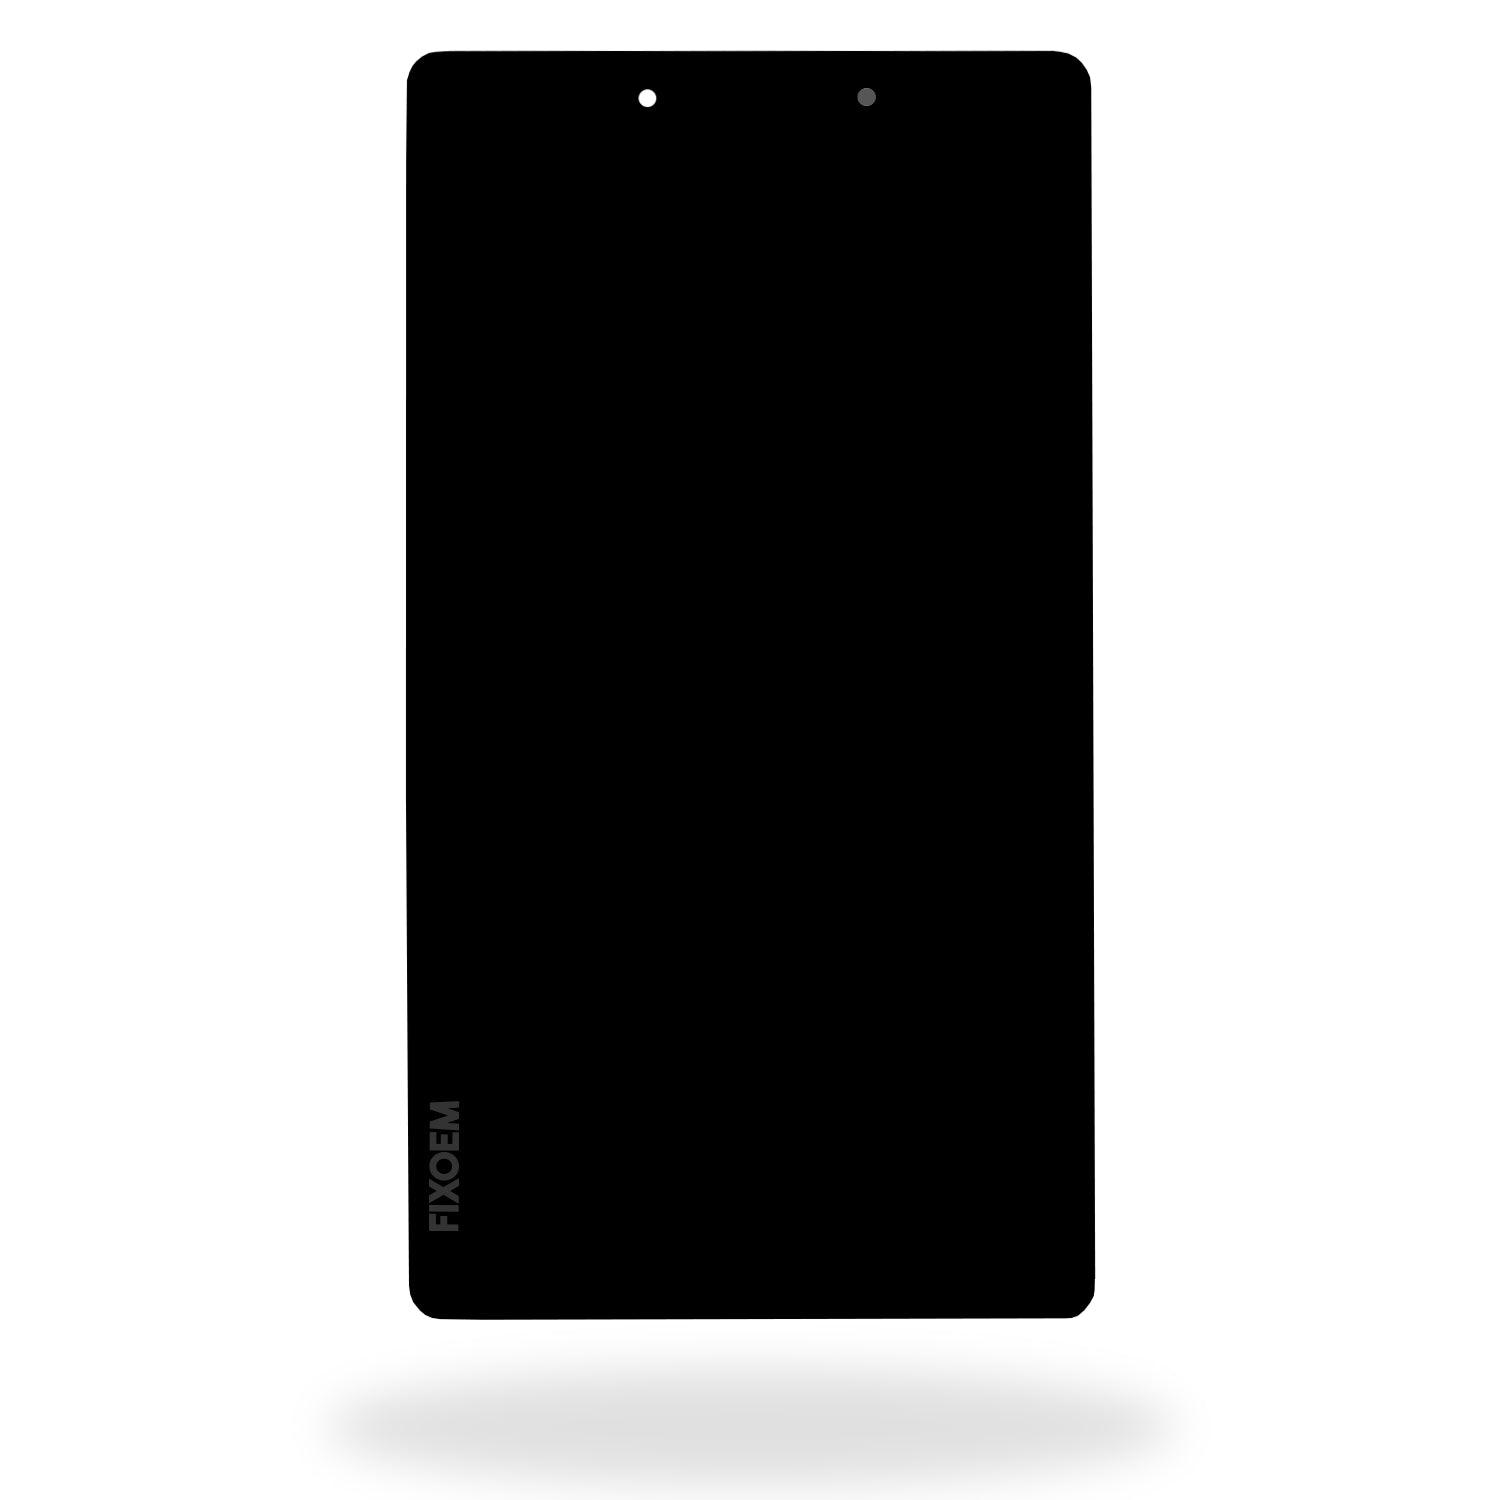 Display Samsung Tab A 8 Pulgadas Sm-T290 a solo $ 250.00 Refaccion y puestos celulares, refurbish y microelectronica.- FixOEM